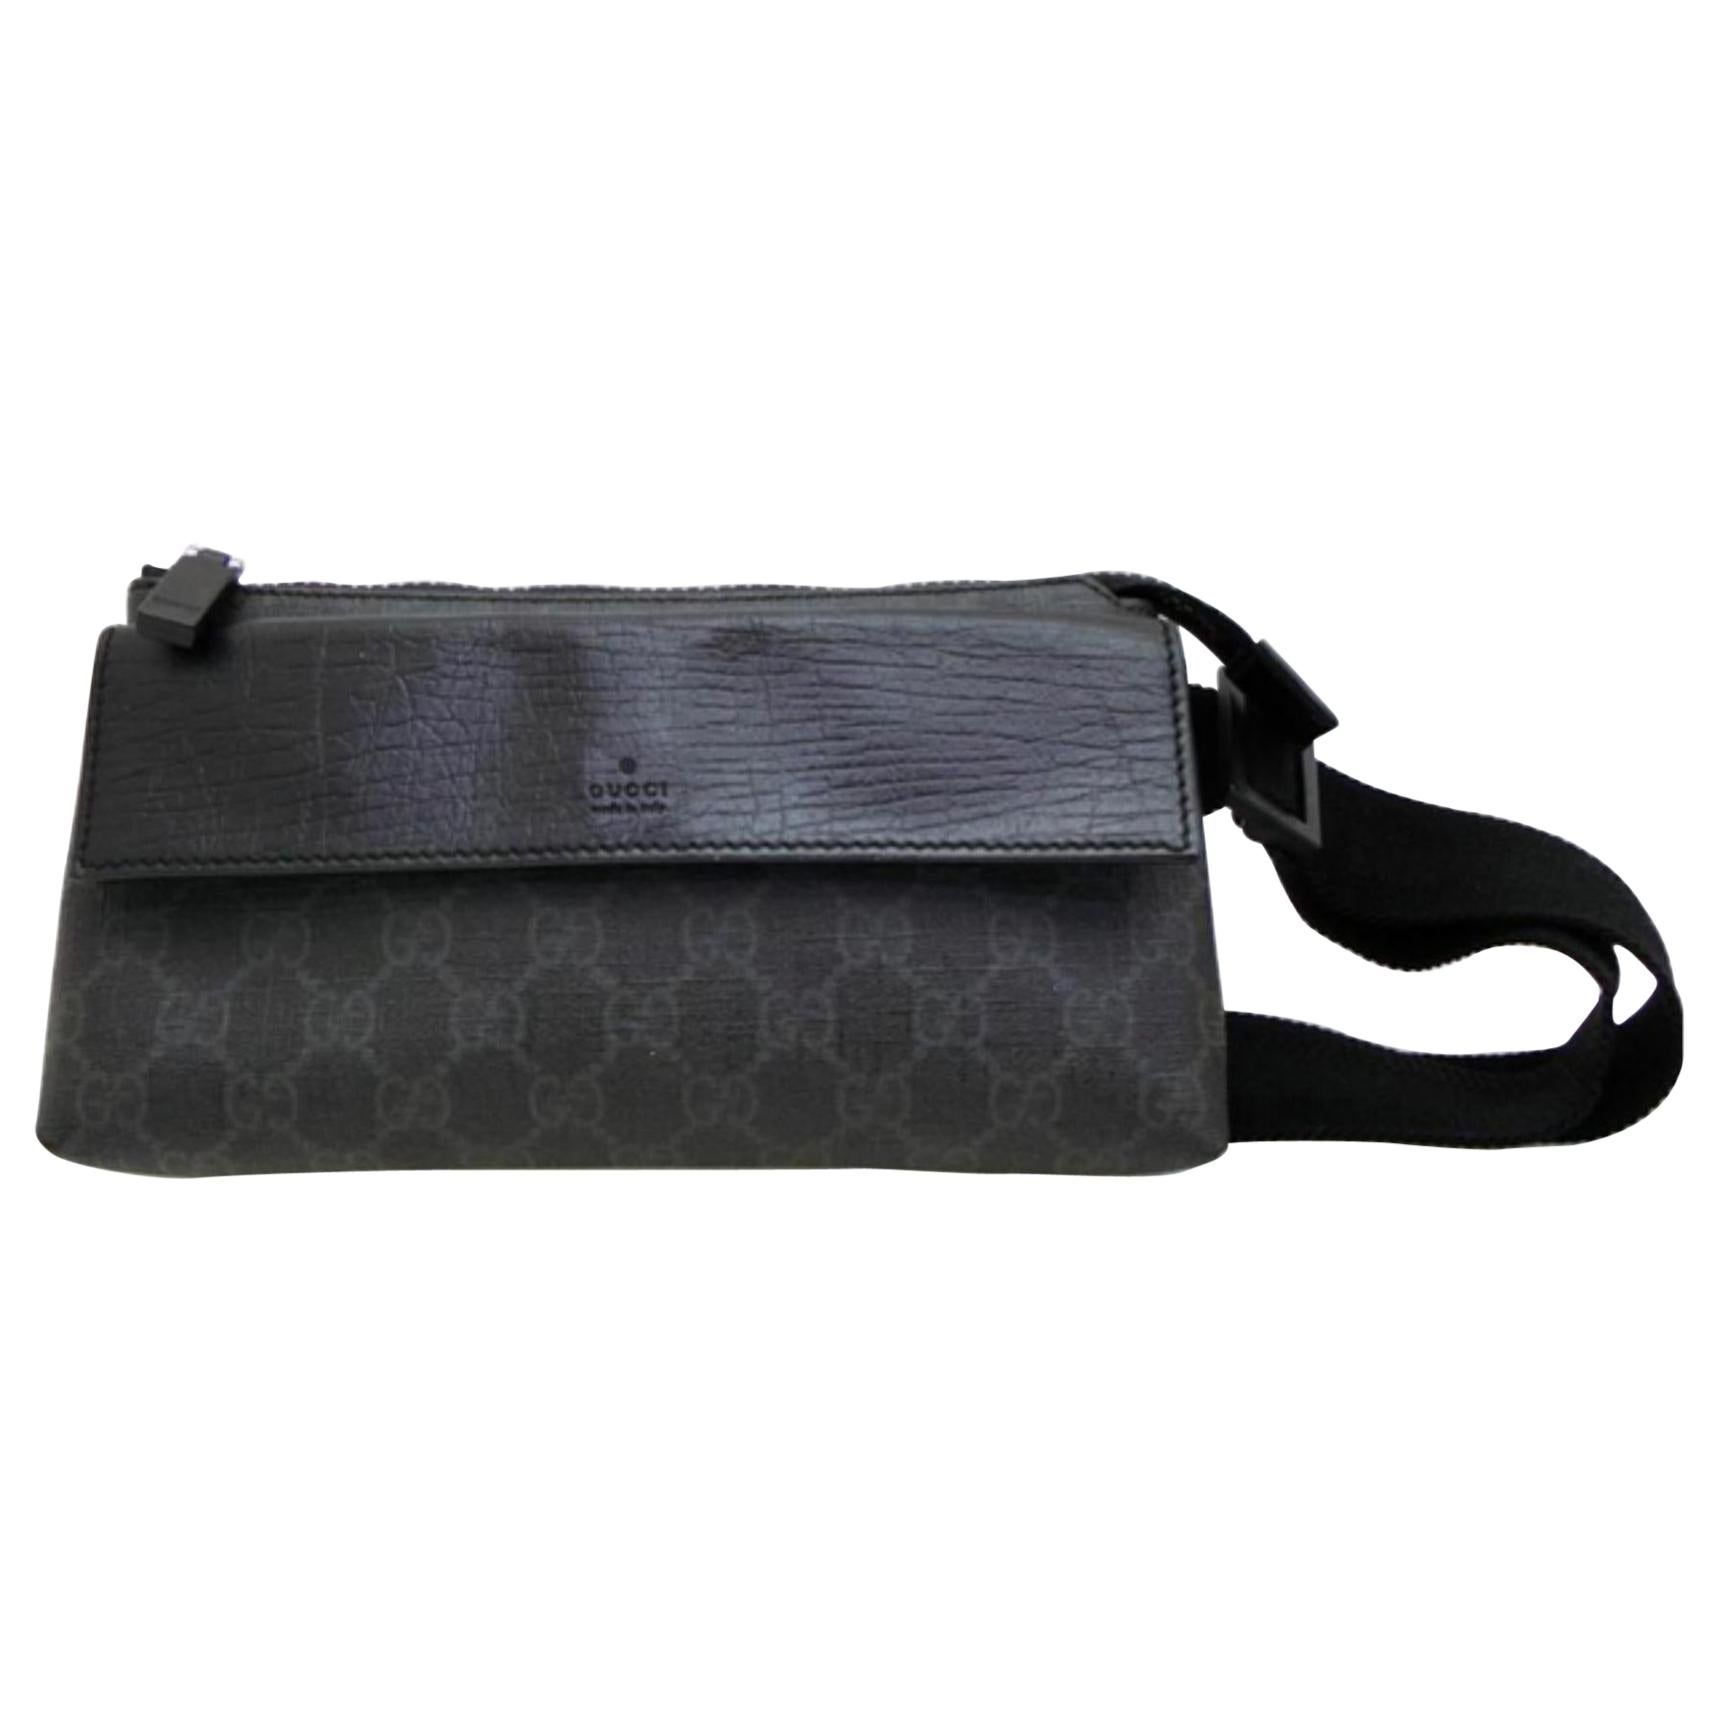 Gucci Waist Supreme Gg Belt Pouch Fanny Pack 233640 Black Leather Shoulder Bag For Sale